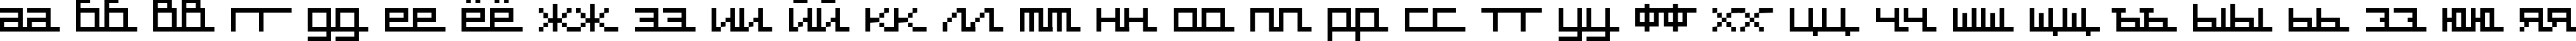 Пример написания русского алфавита шрифтом supercar cyr